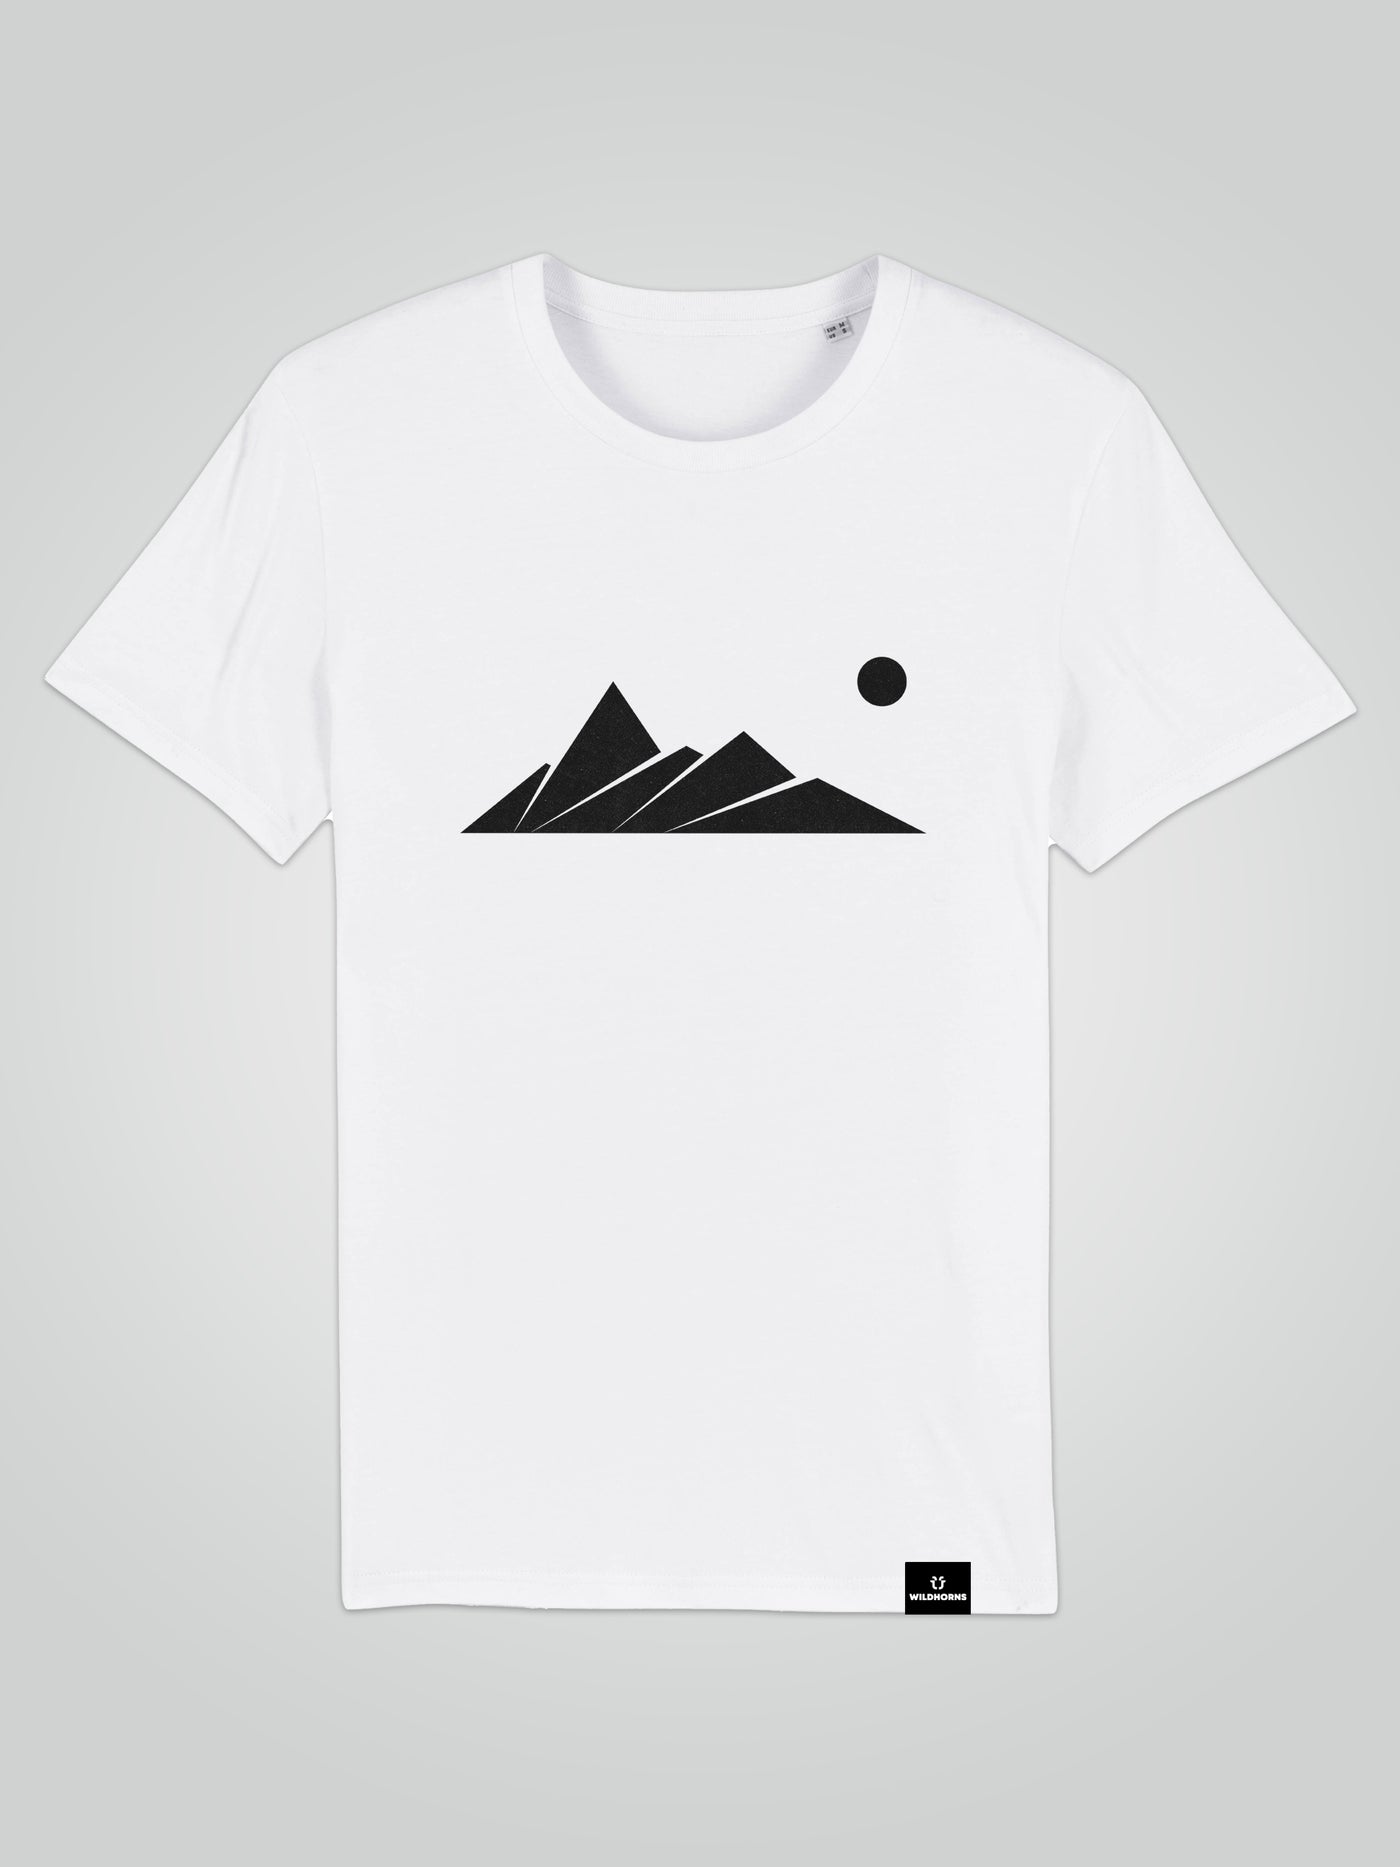 Keep It Simple - Unisex T-Shirt